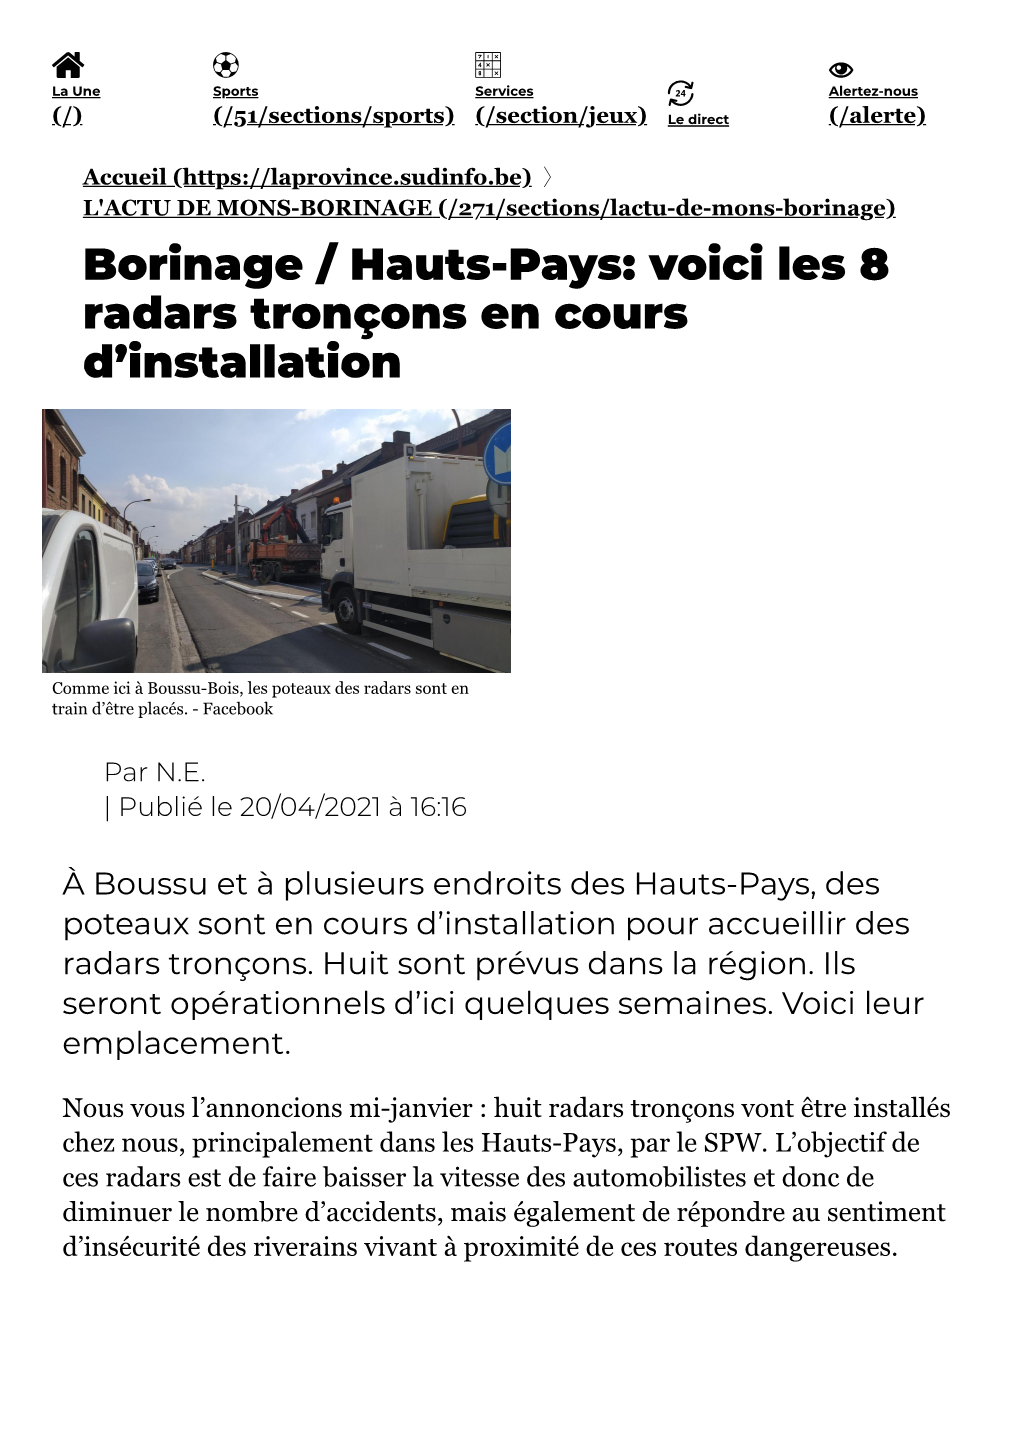 Borinage / Hauts-Pays: Voici Les 8 Radars Tronçons En Cours D'installation